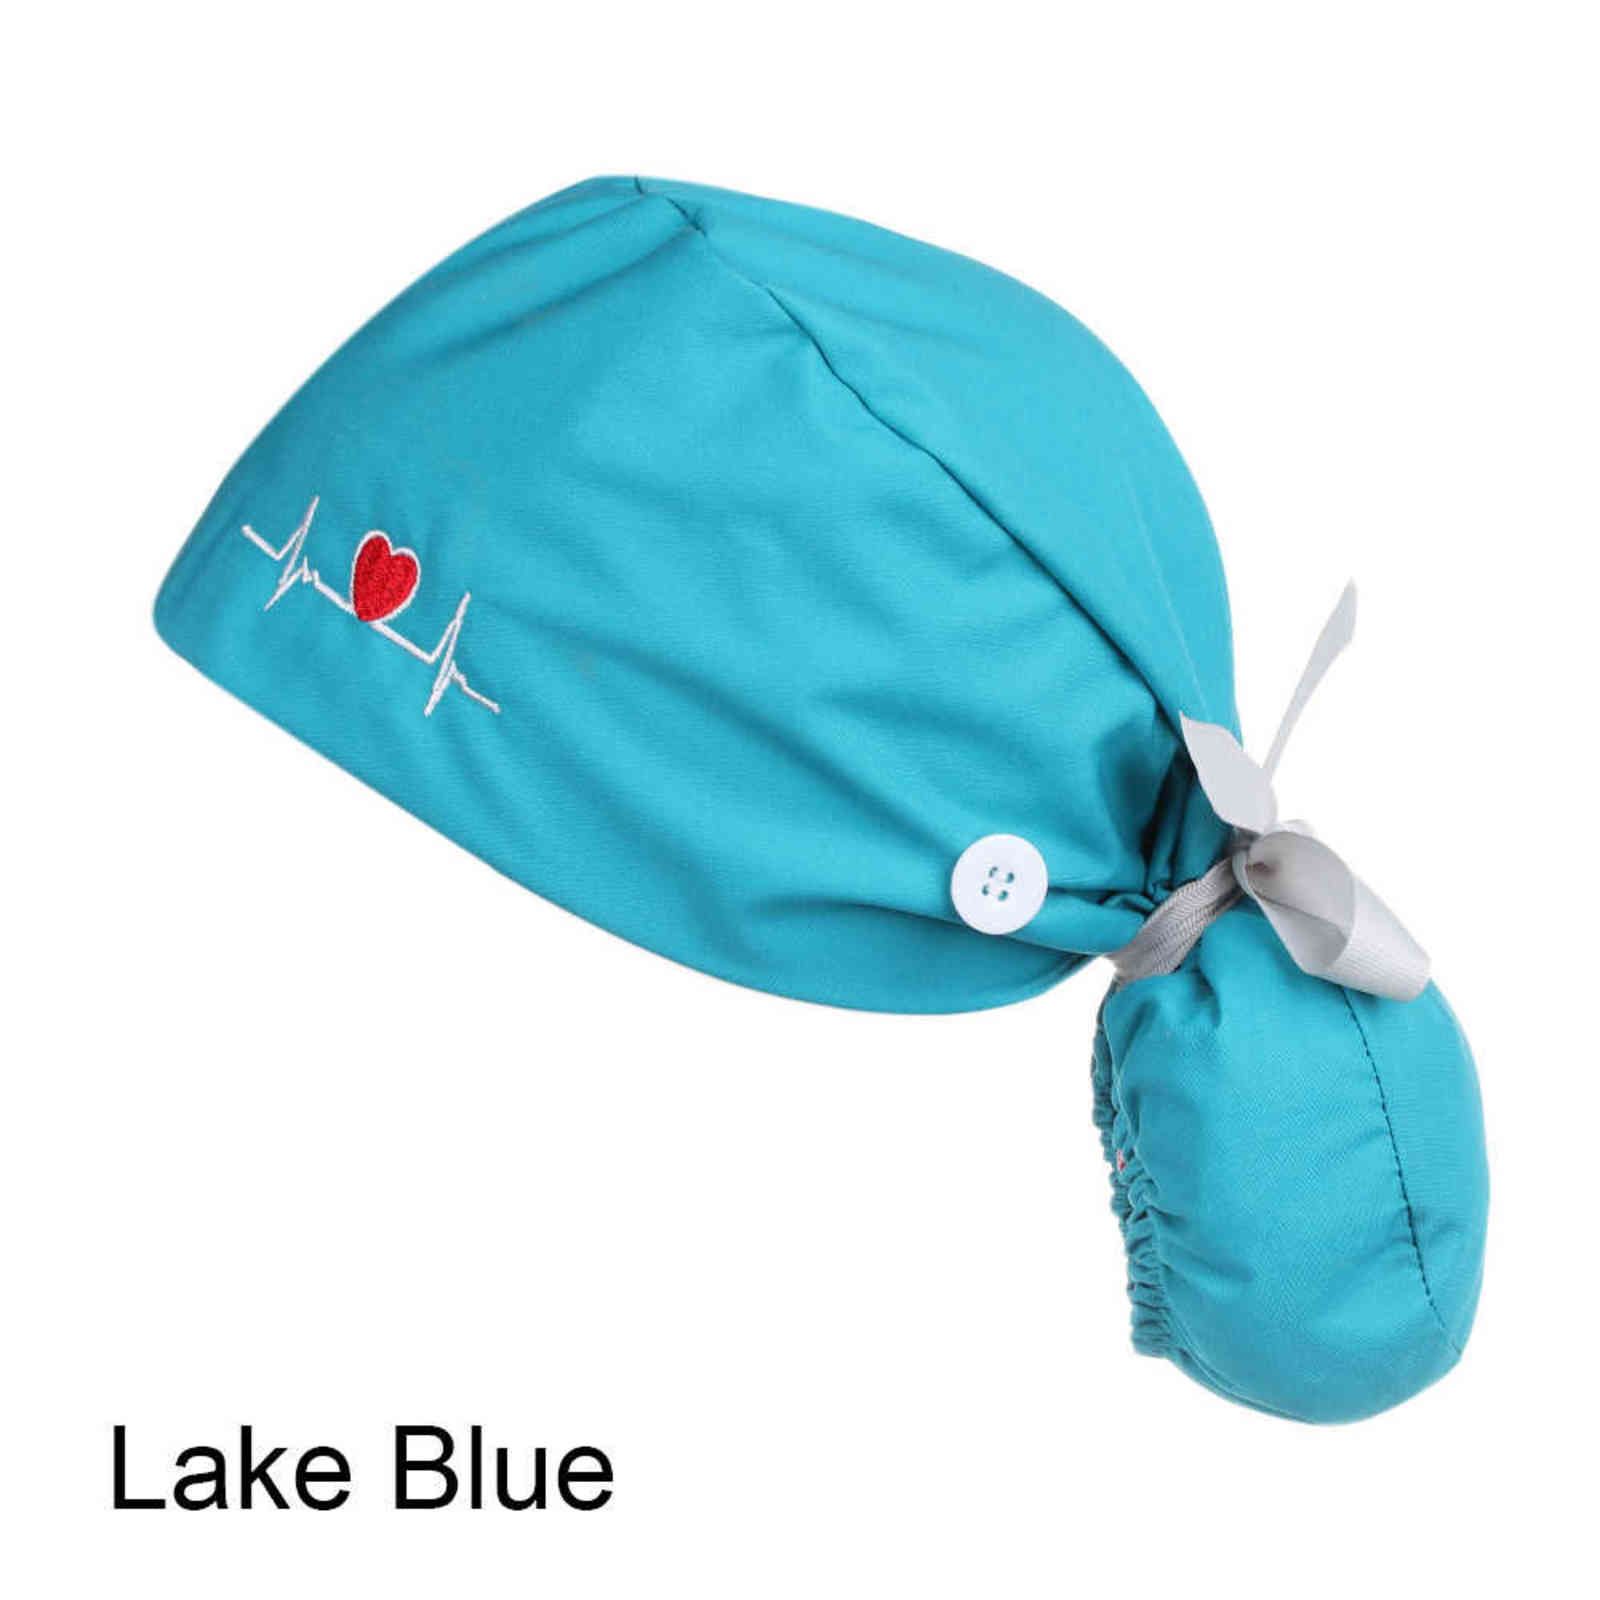 a Lake Blue